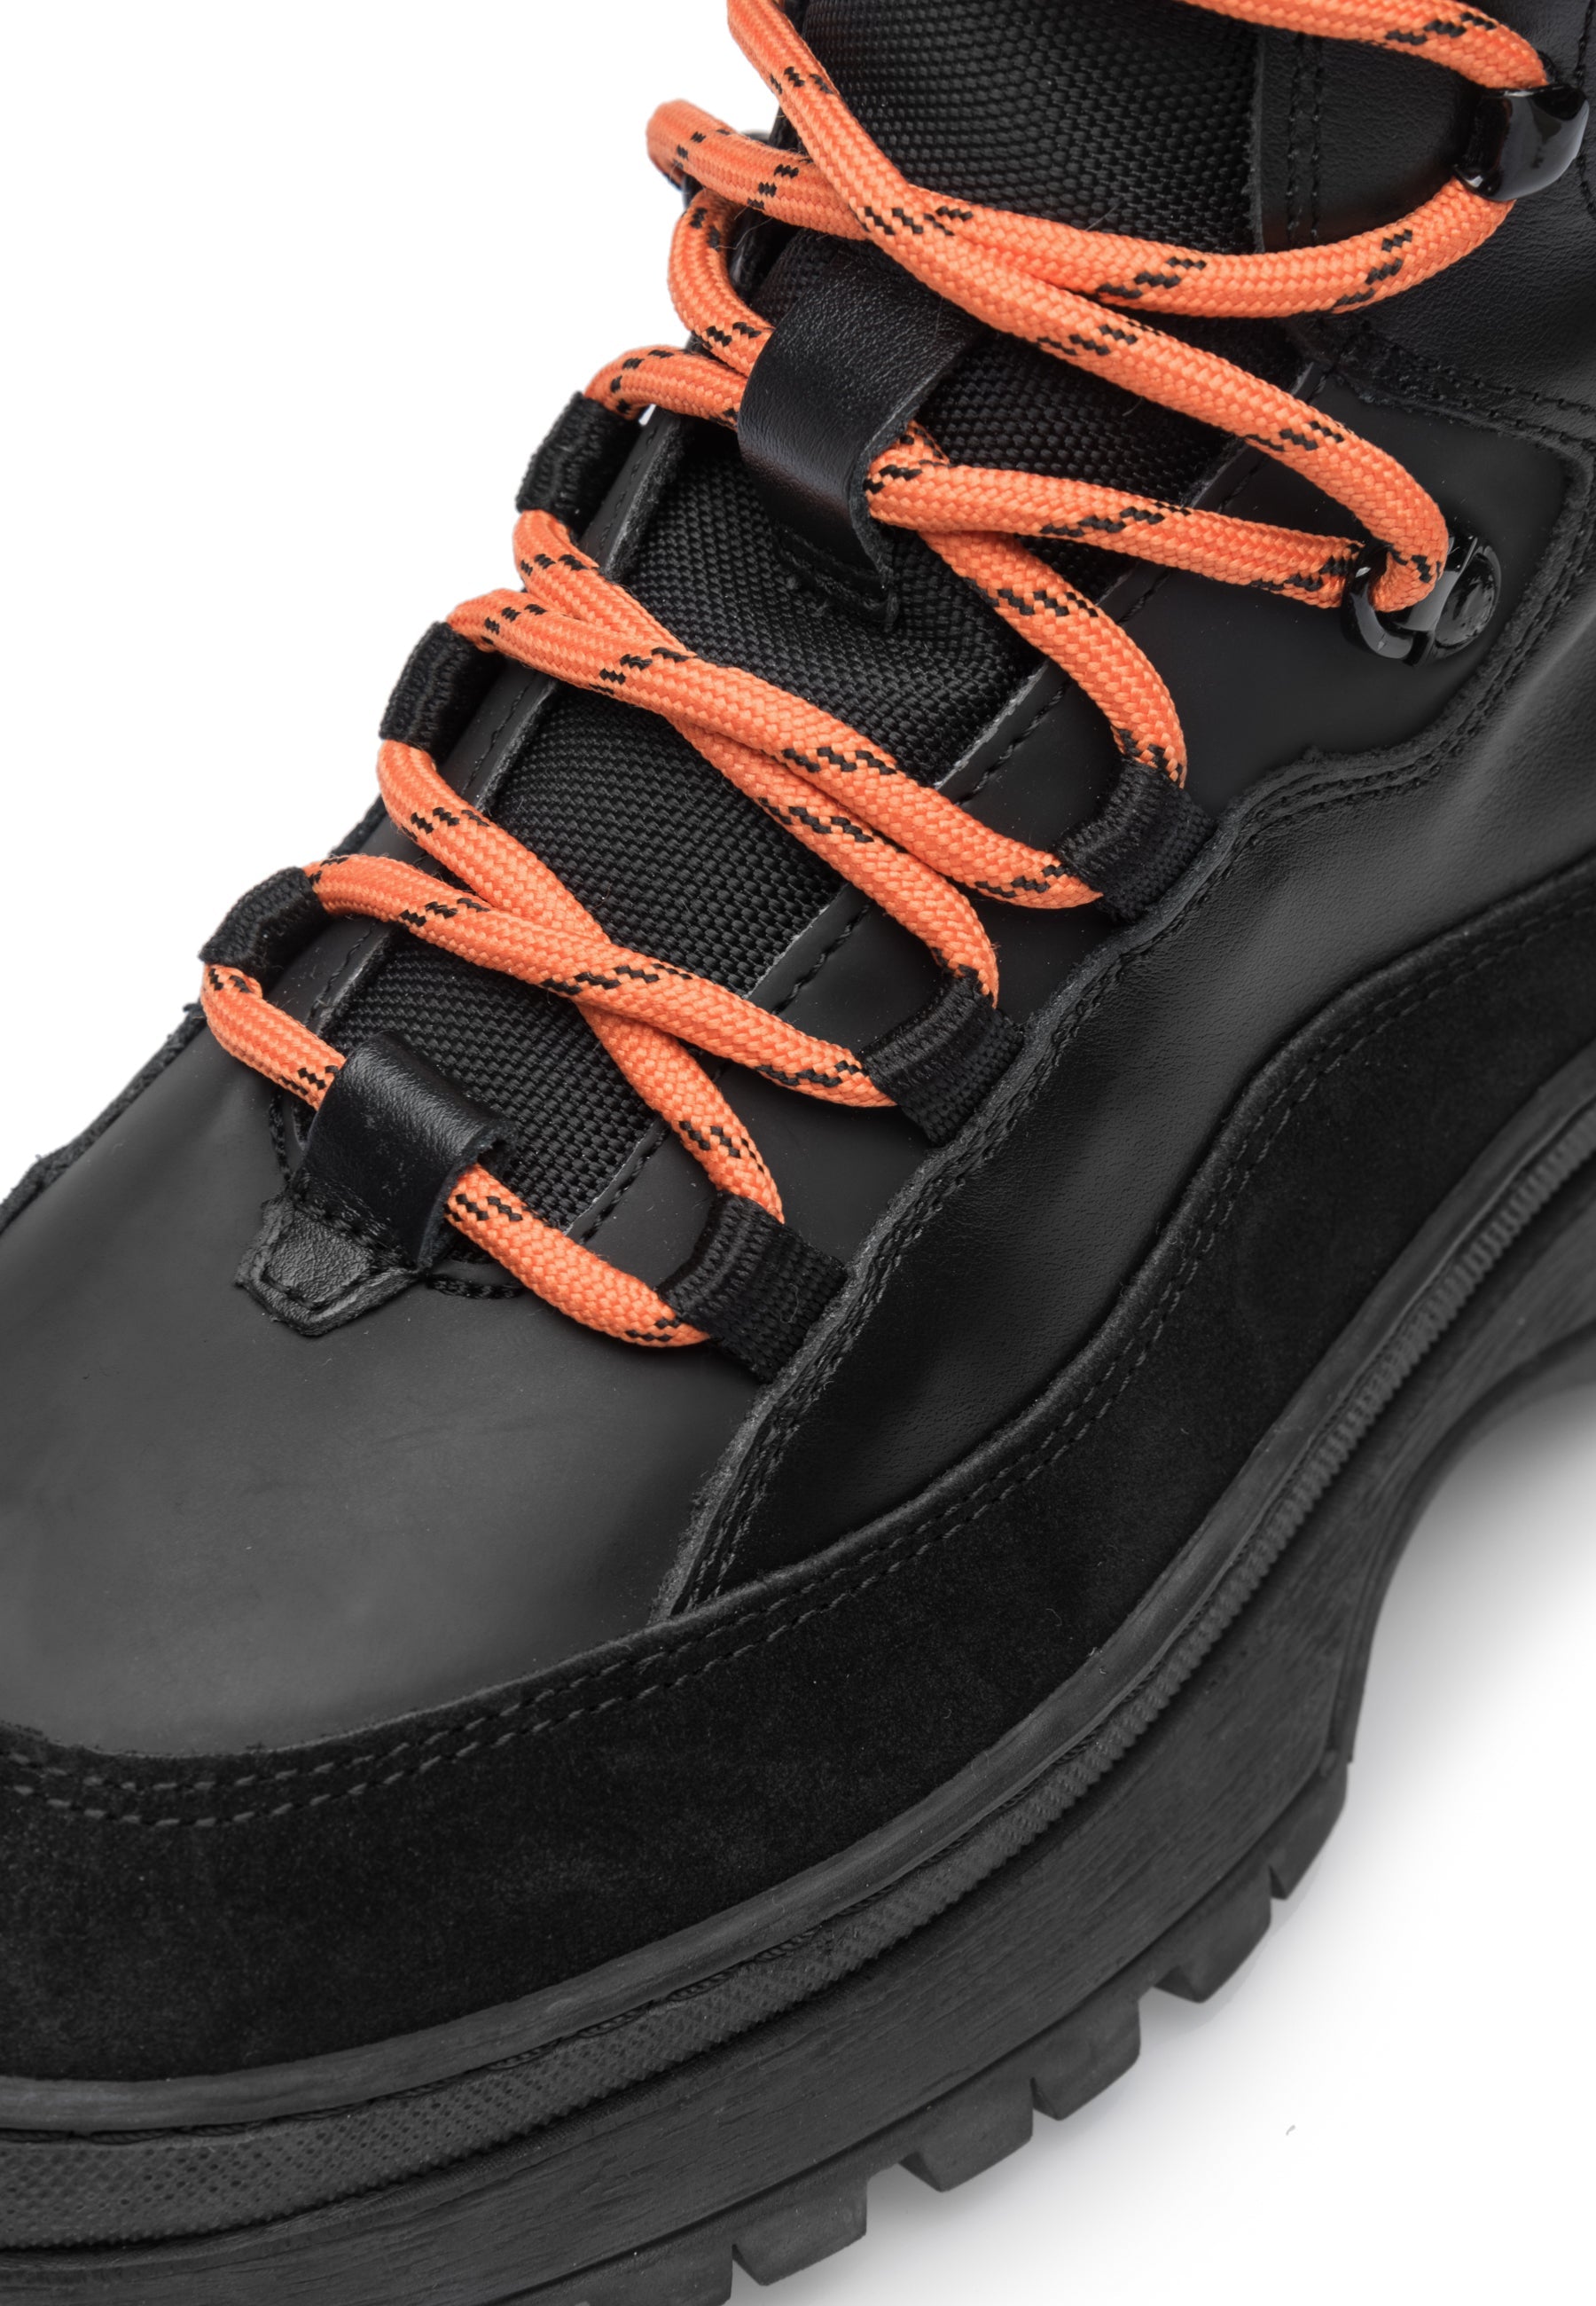 Downhill Boots Black LAST1687 - 5